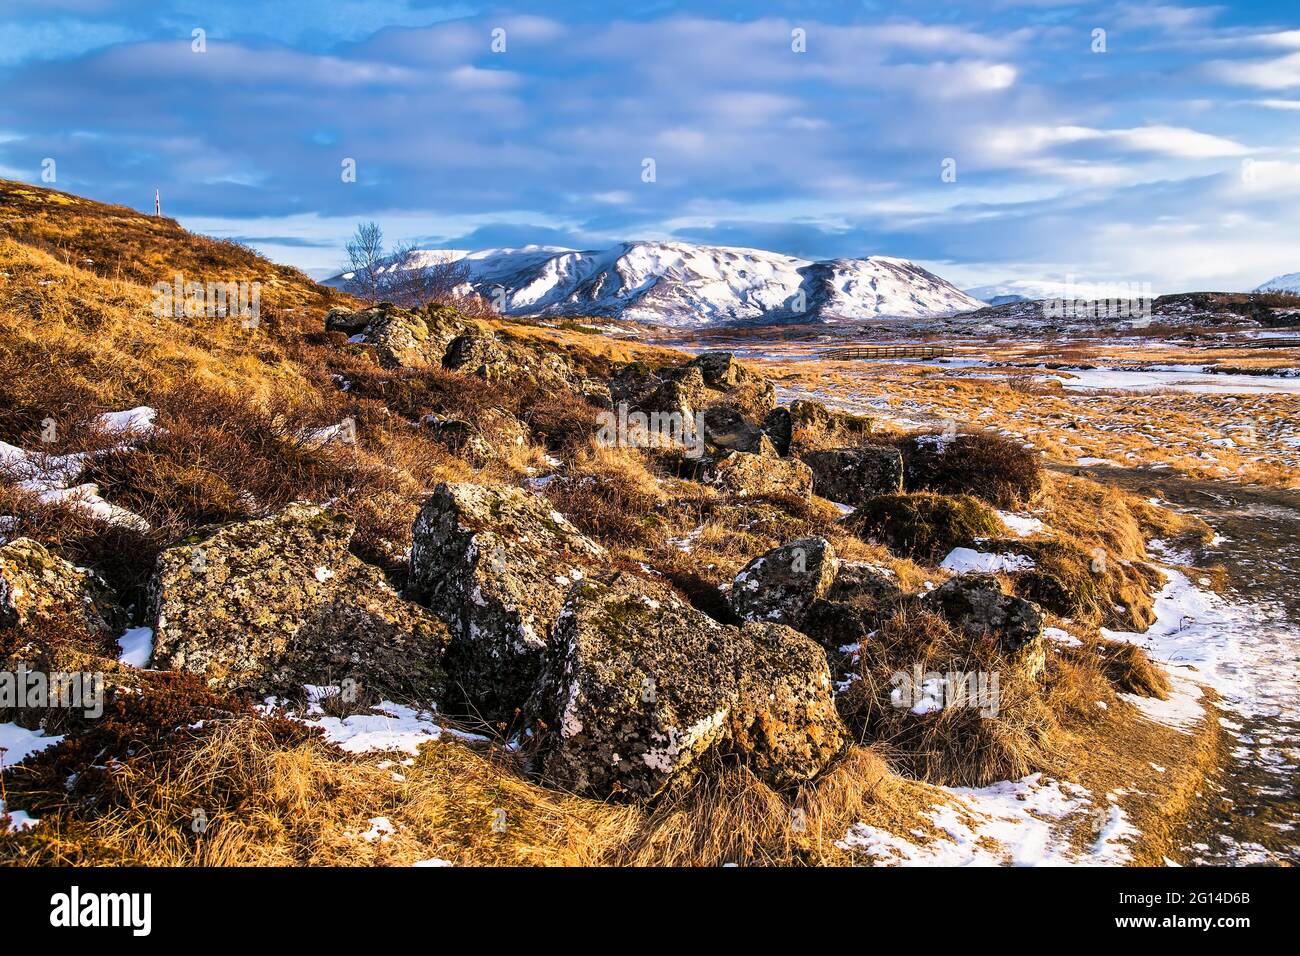 Beau paysage islandais d'hiver en riz soleil avec des montagnes couvertes de neige . Islande. Banque D'Images